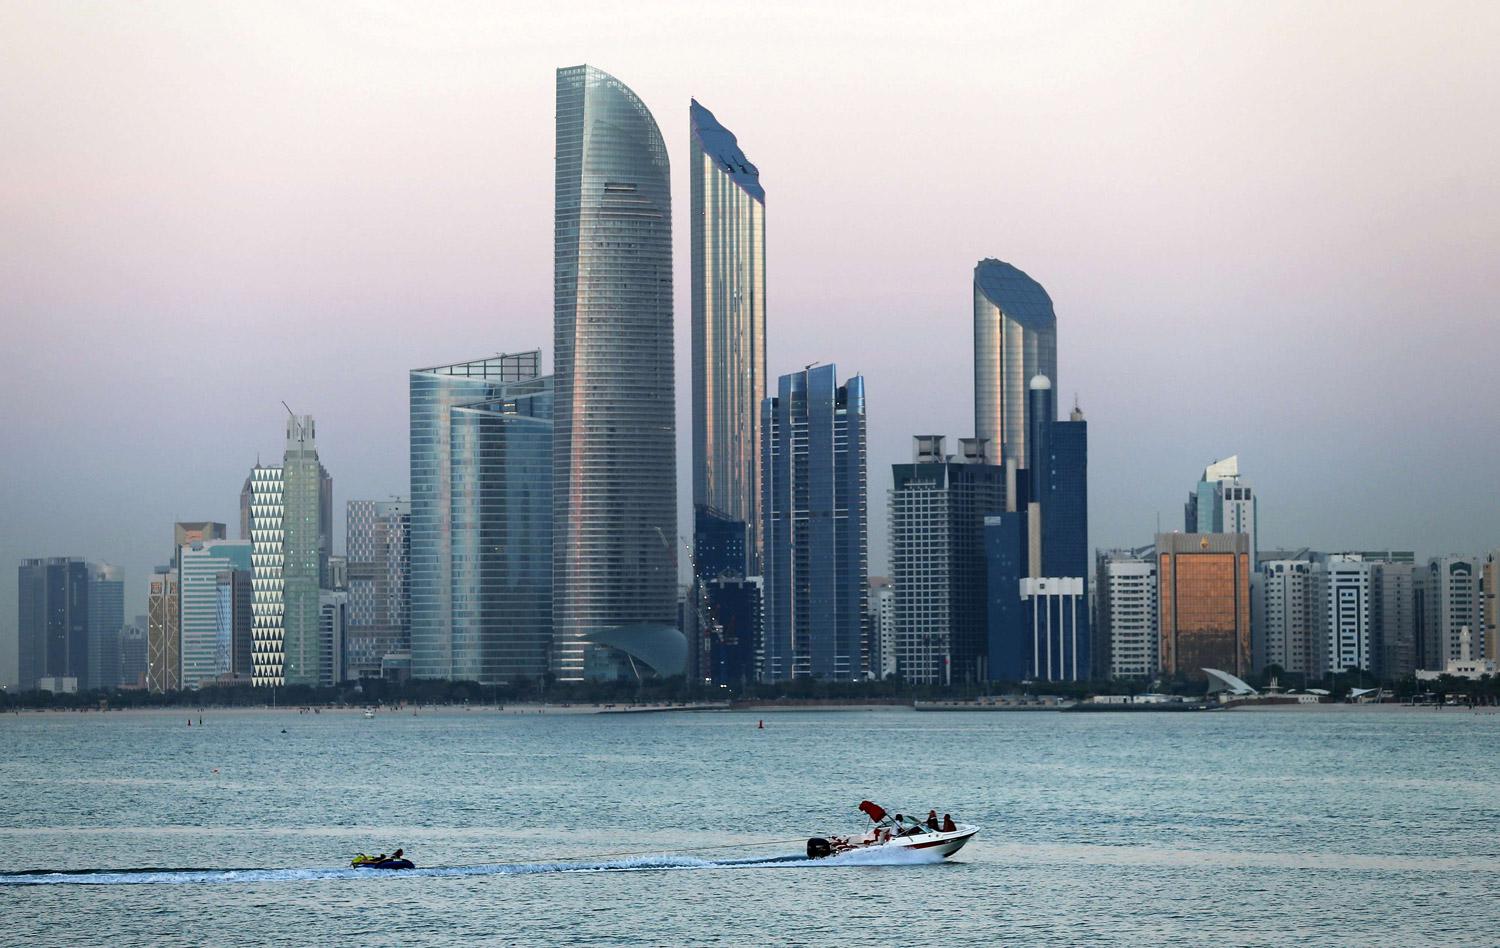 قفزة نوعية لاقتصاد الإمارات تزامنا مع إكسبو 2020